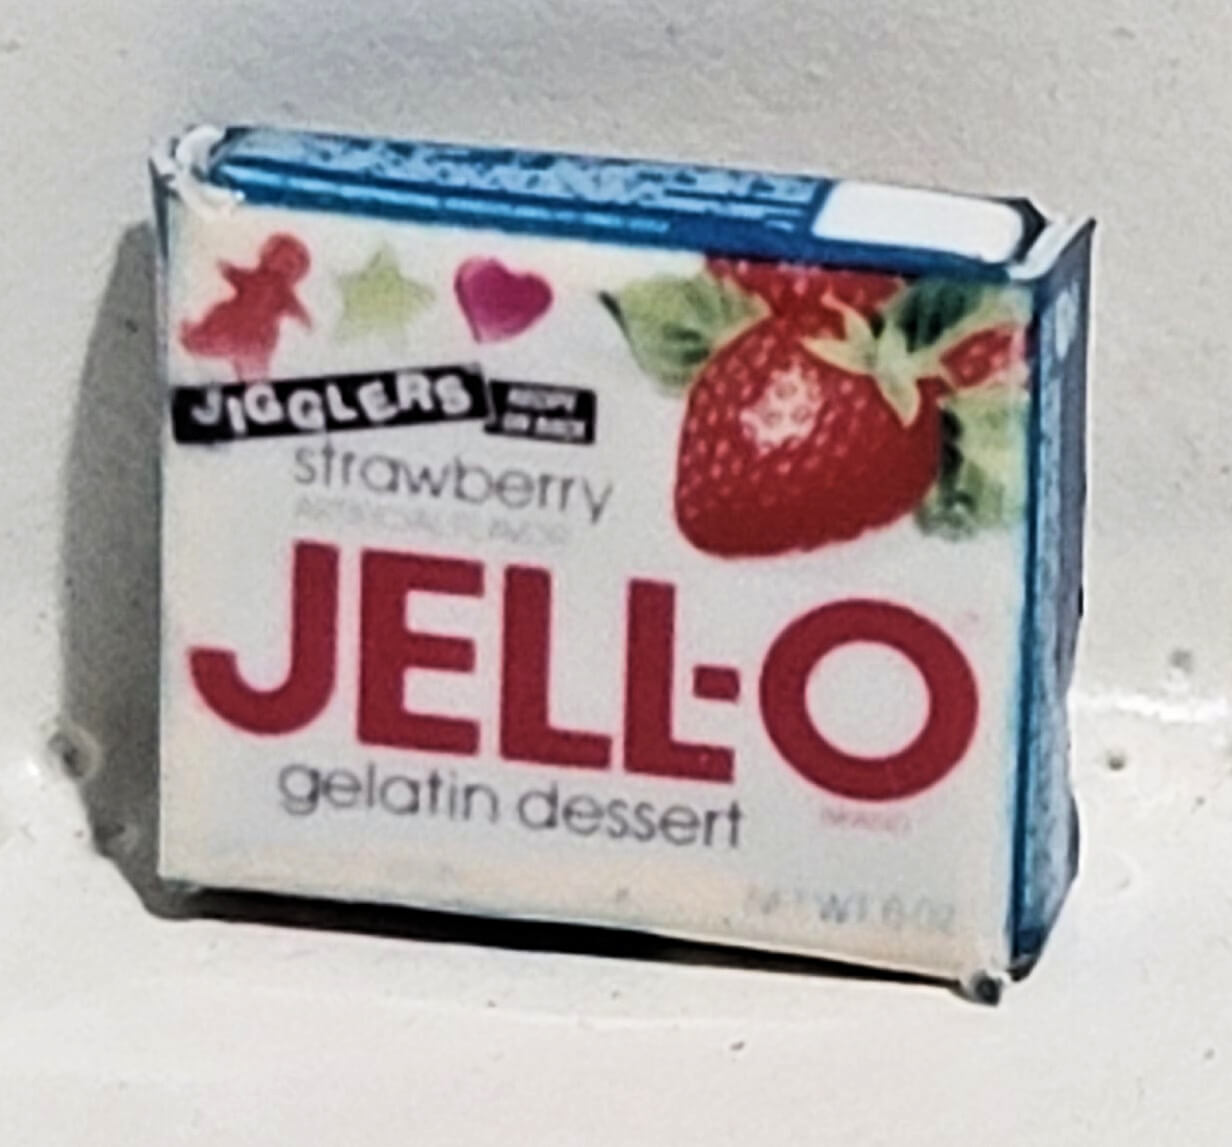 Strawberry Jello Box